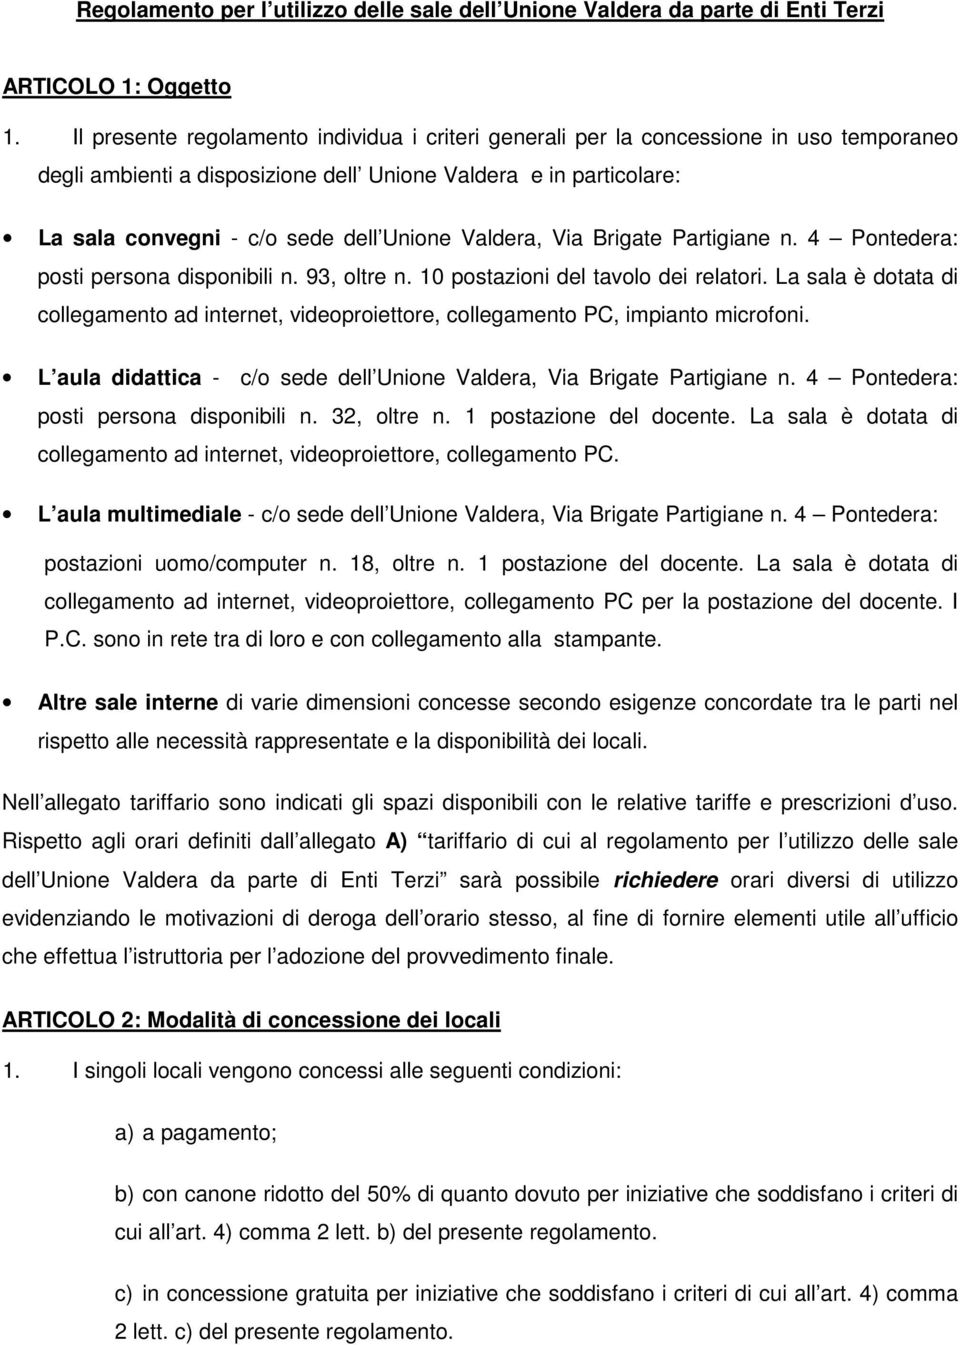 Brigate Partigiane n. 4 Pontedera: posti persona disponibili n. 93, oltre n. 10 postazioni del tavolo dei relatori.